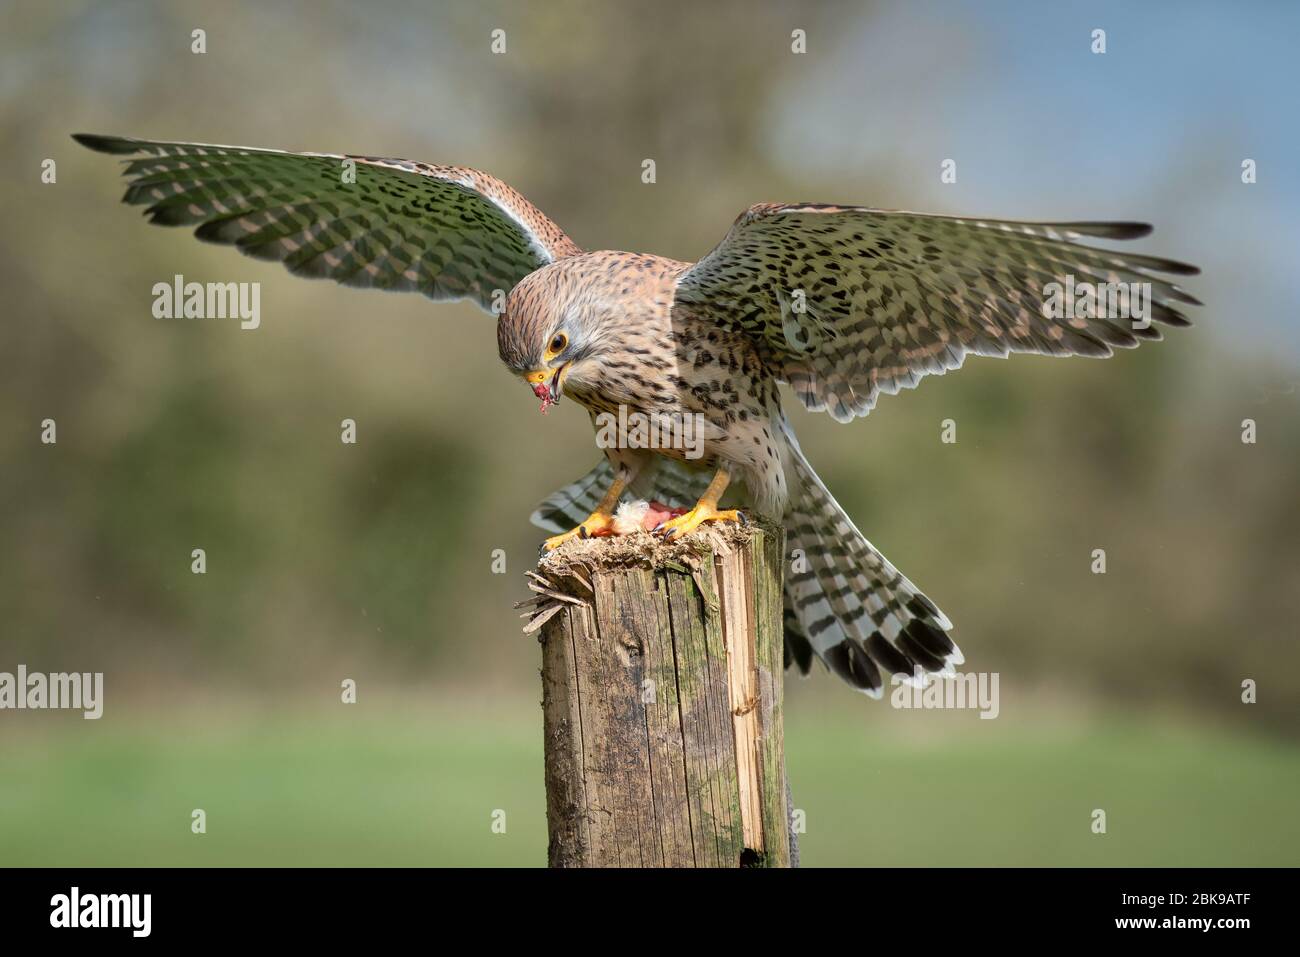 Ein gefangener Turmfalke, Falco tinnunculus, mit Flügeln ausgebreitet Landung auf einem alten hölzernen Pfosten. Er hat Nahrung auf seinem Schnabel von seiner Beute Stockfoto